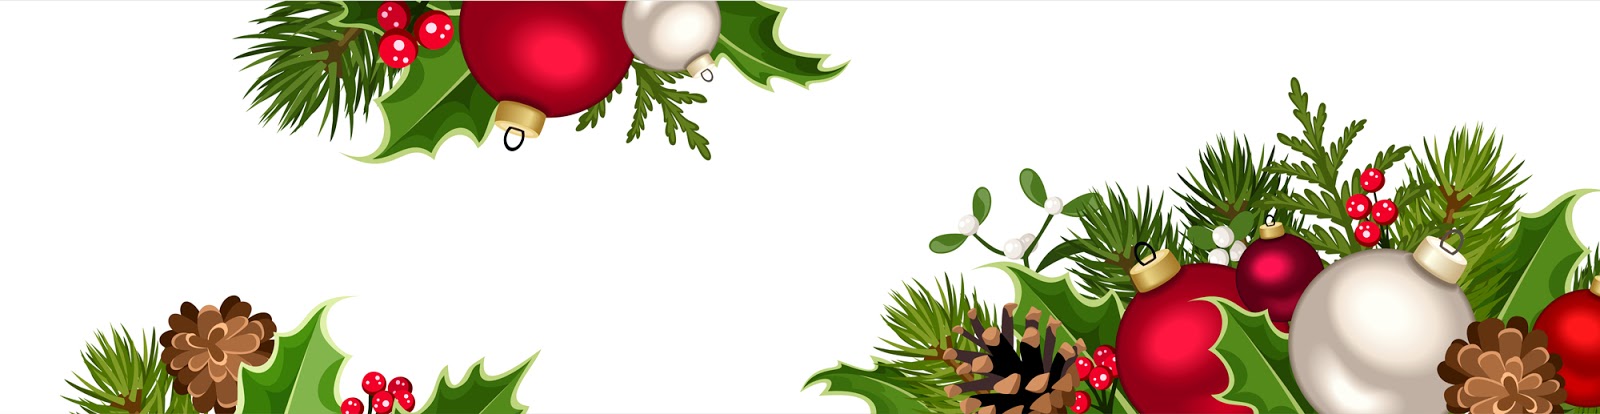 Banco de Imágenes Gratis: 4 nuevas imágenes navideñas con esferas y adornos  para la portada de tu Facebook y para diseñar tarjetas y postales de Navidad